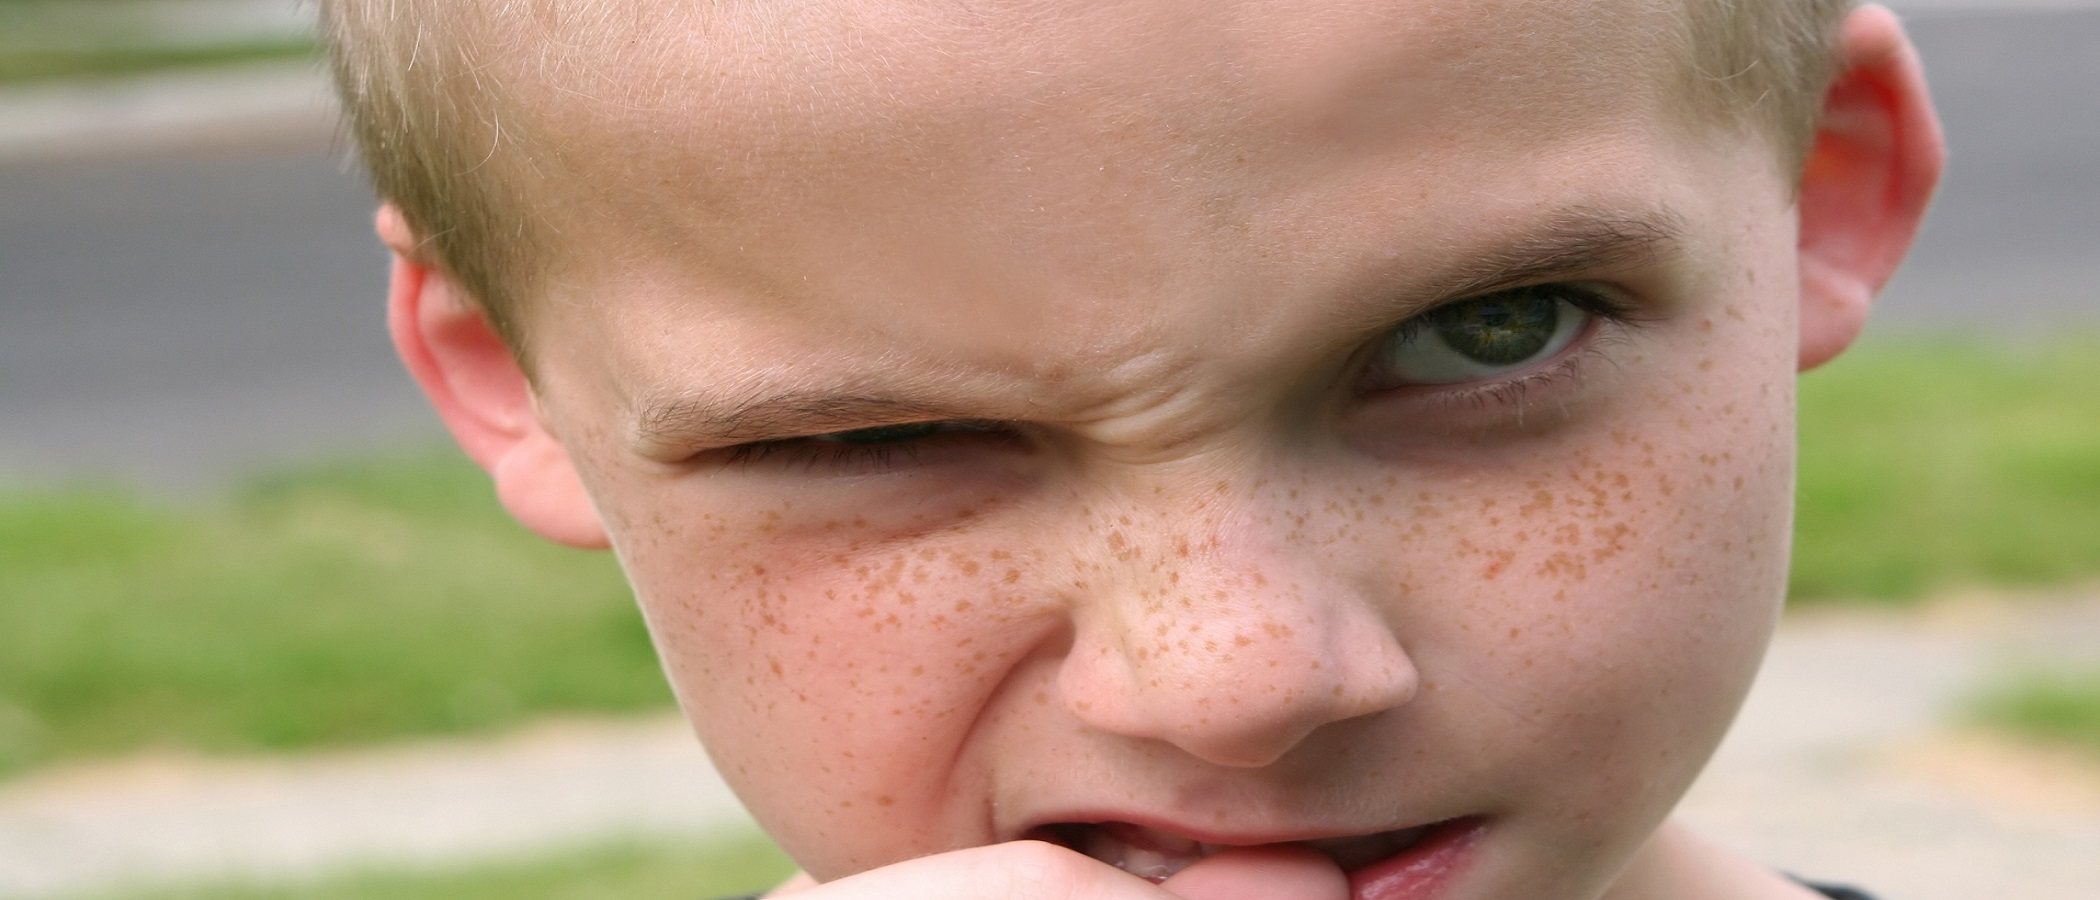 8 estrategias para que tu hijo deje de morderse las uñas